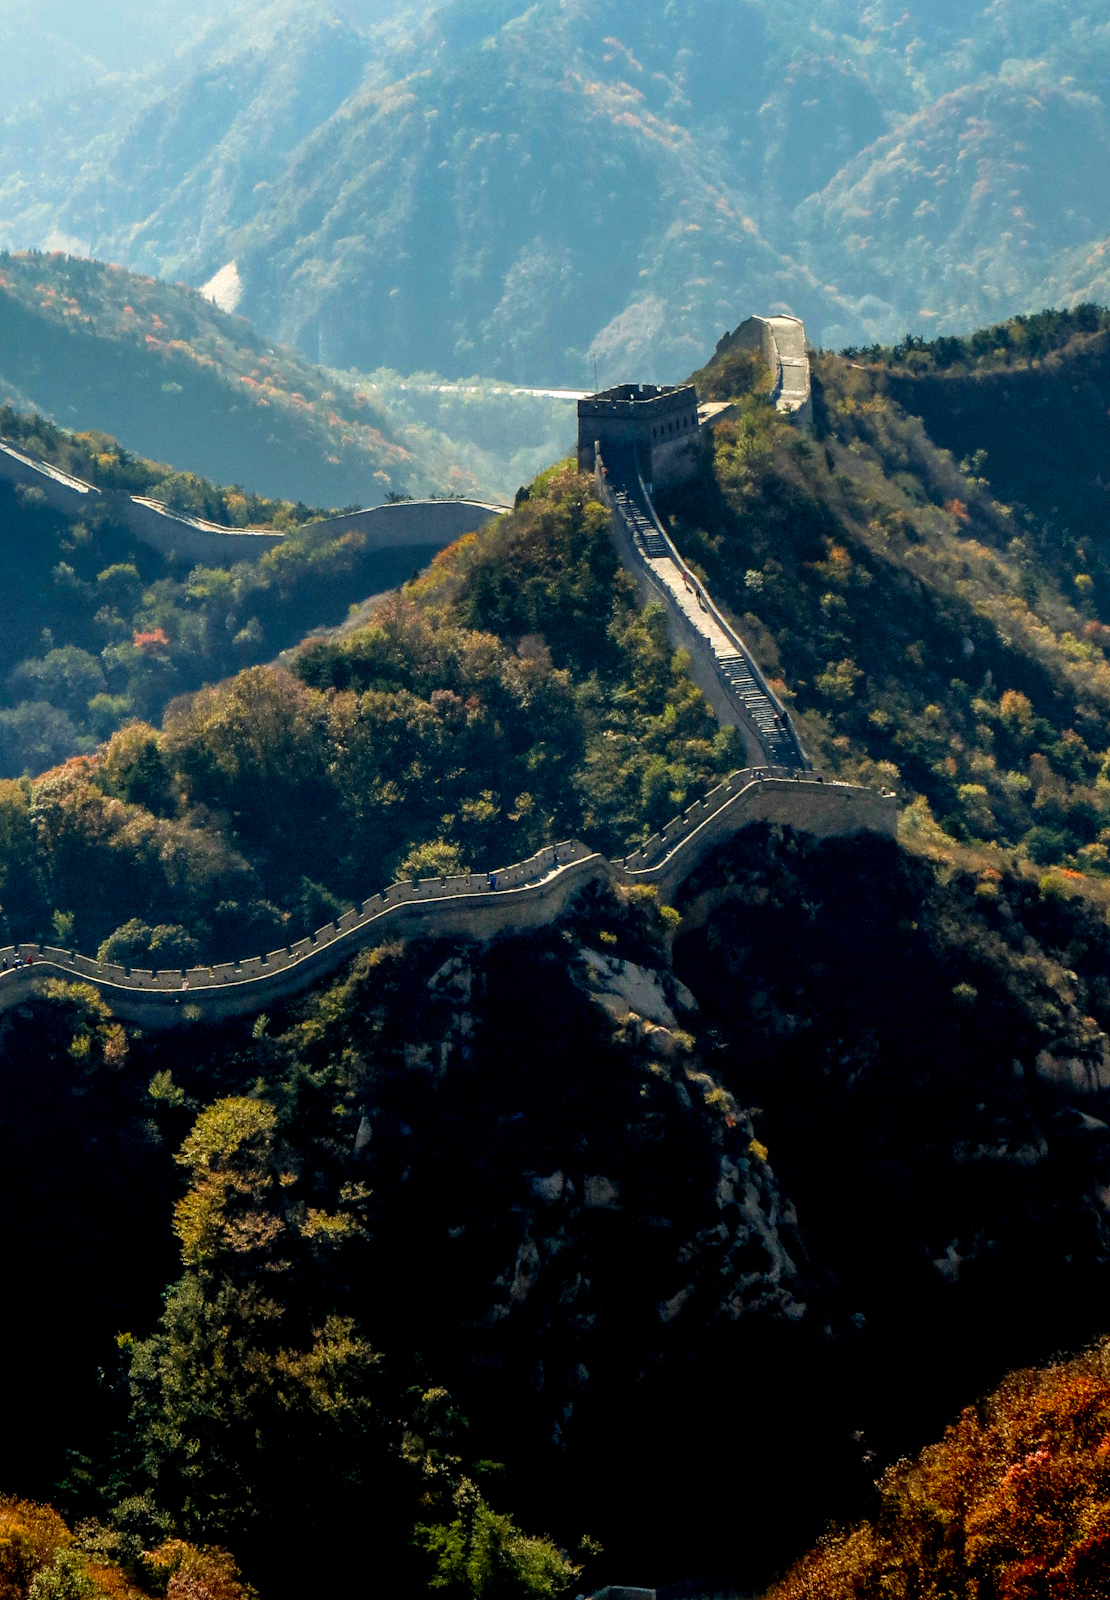 long-view-great-wall-of-china-badaling